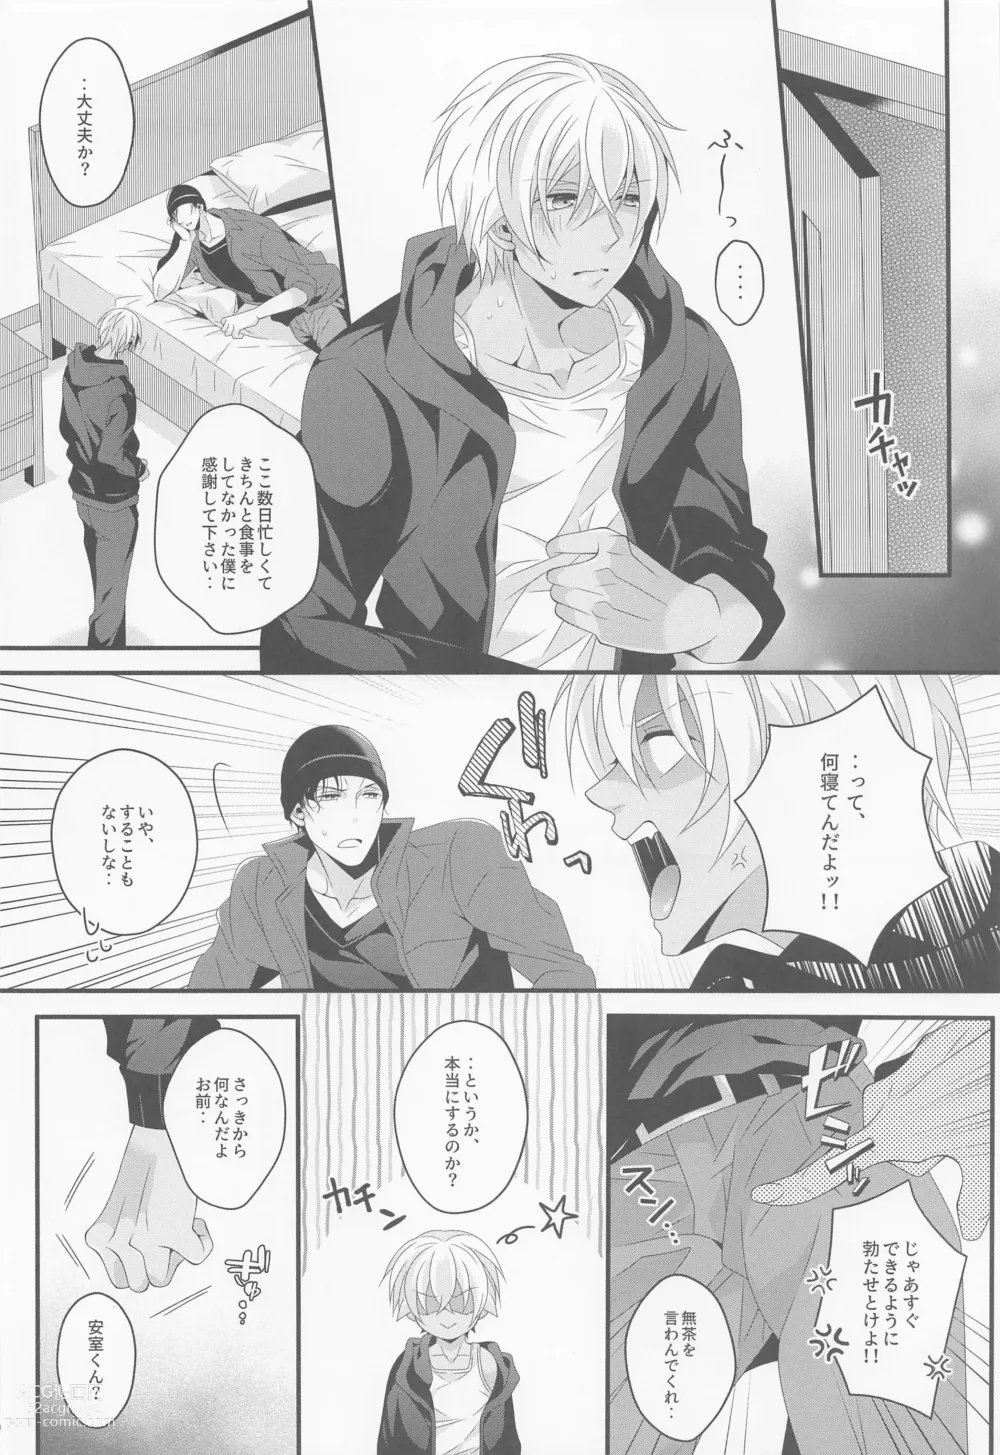 Page 9 of doujinshi When one door closes, another door opens.